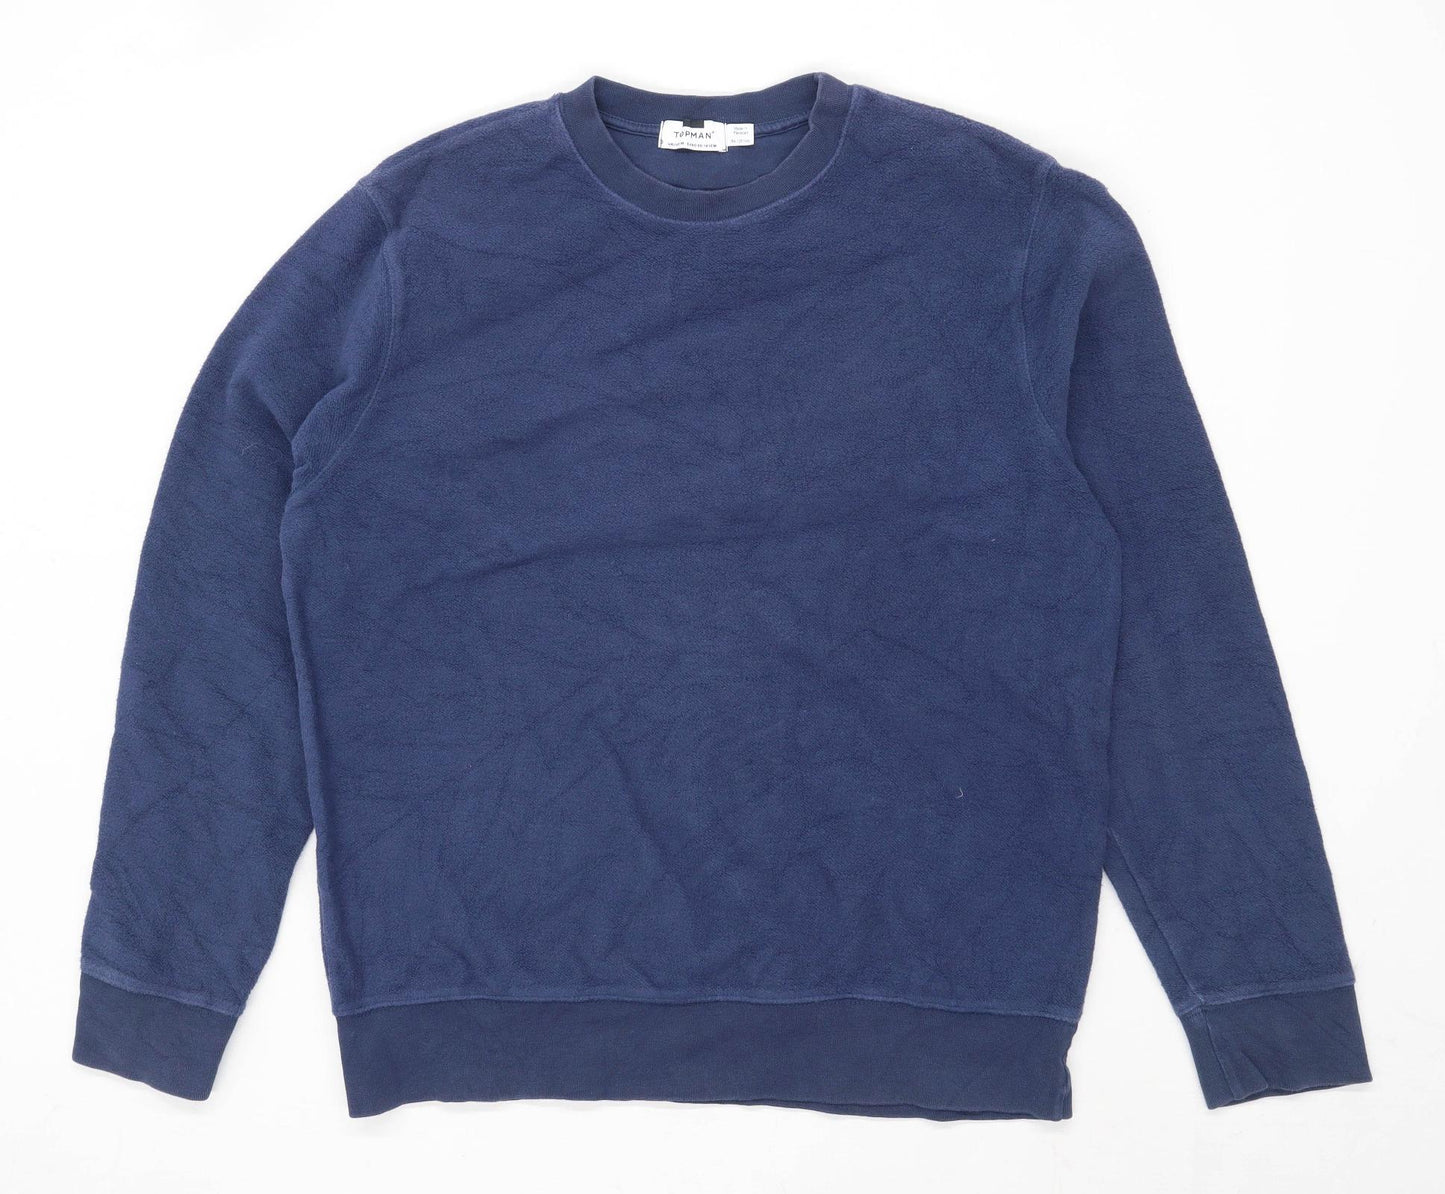 Topman Mens Size M Cotton Blend Blue Sweatshirt